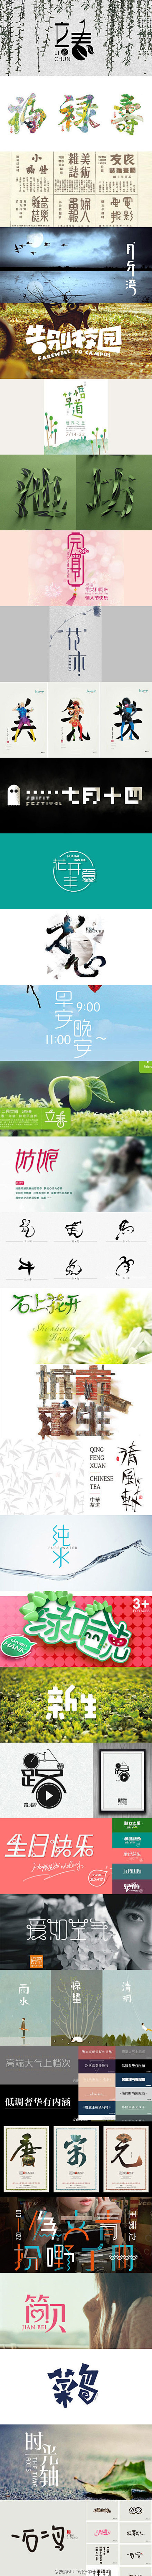 中文字体设计作品